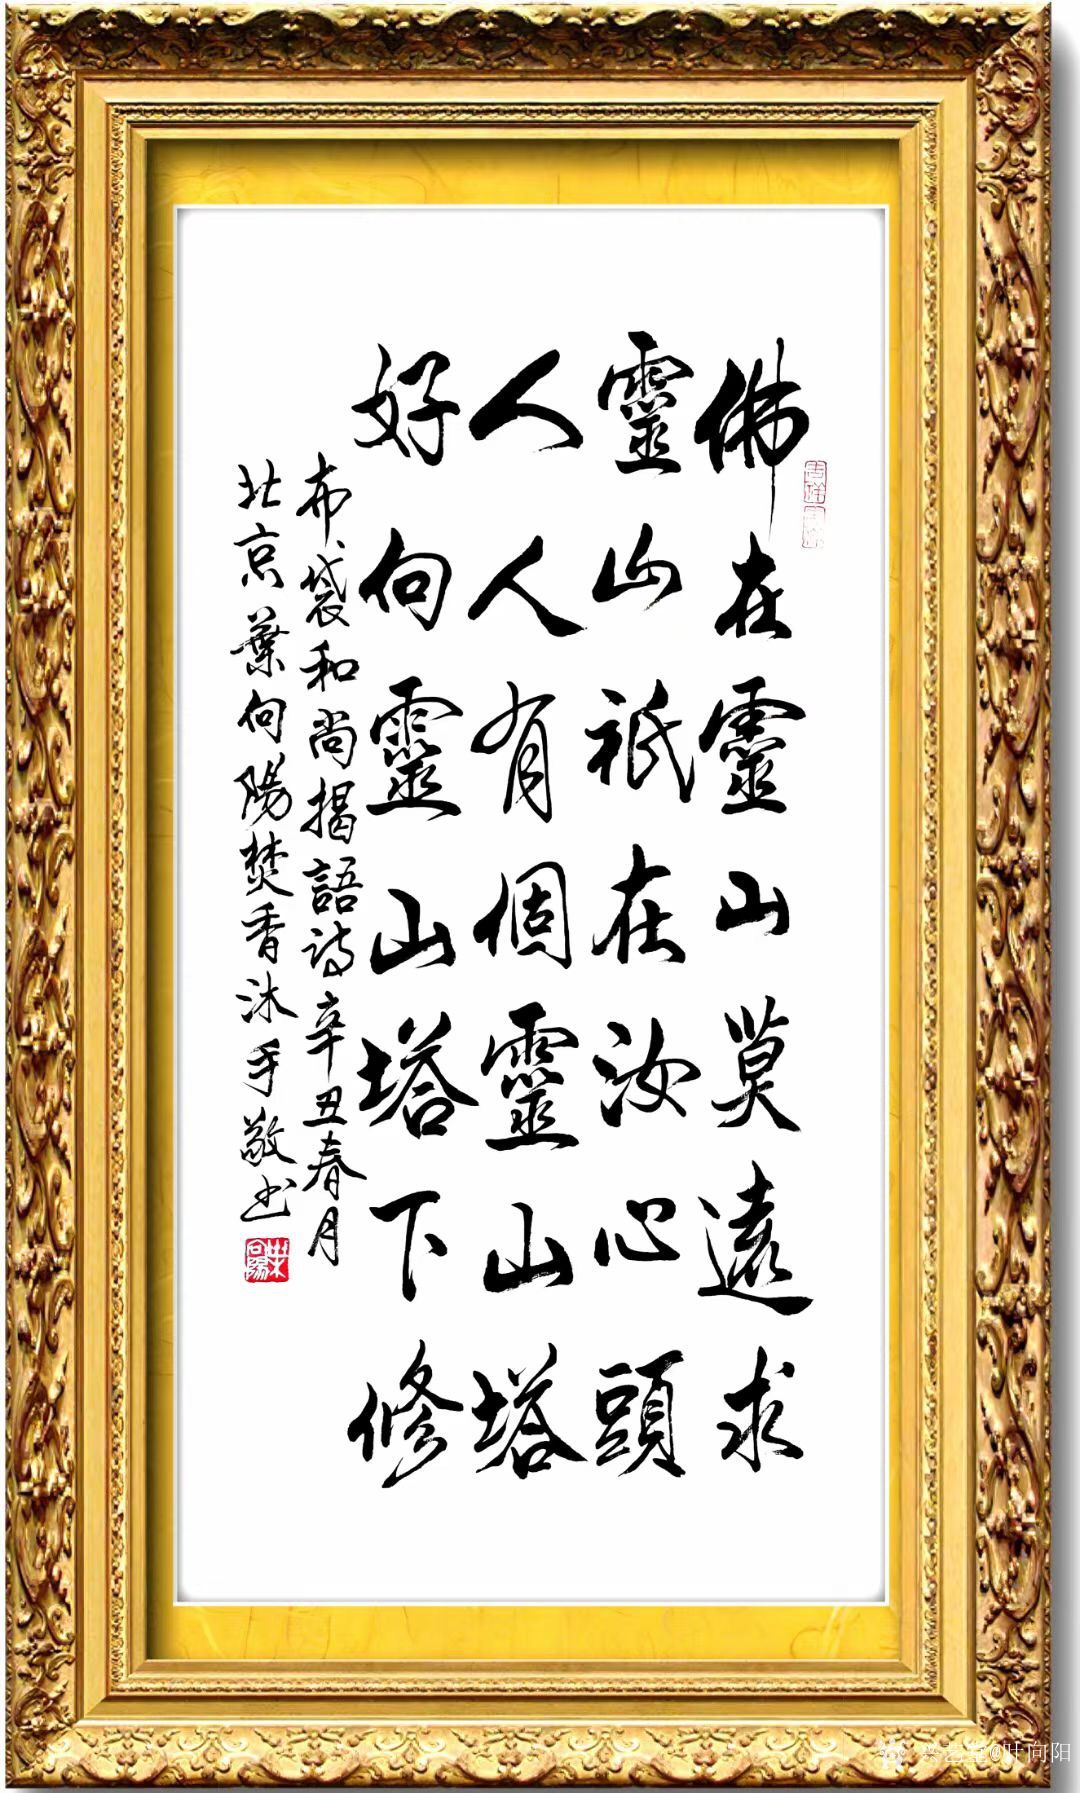 行书书法作品《布袋和尚偈语诗》,辛丑年春月北京叶向阳焚香沐手敬书